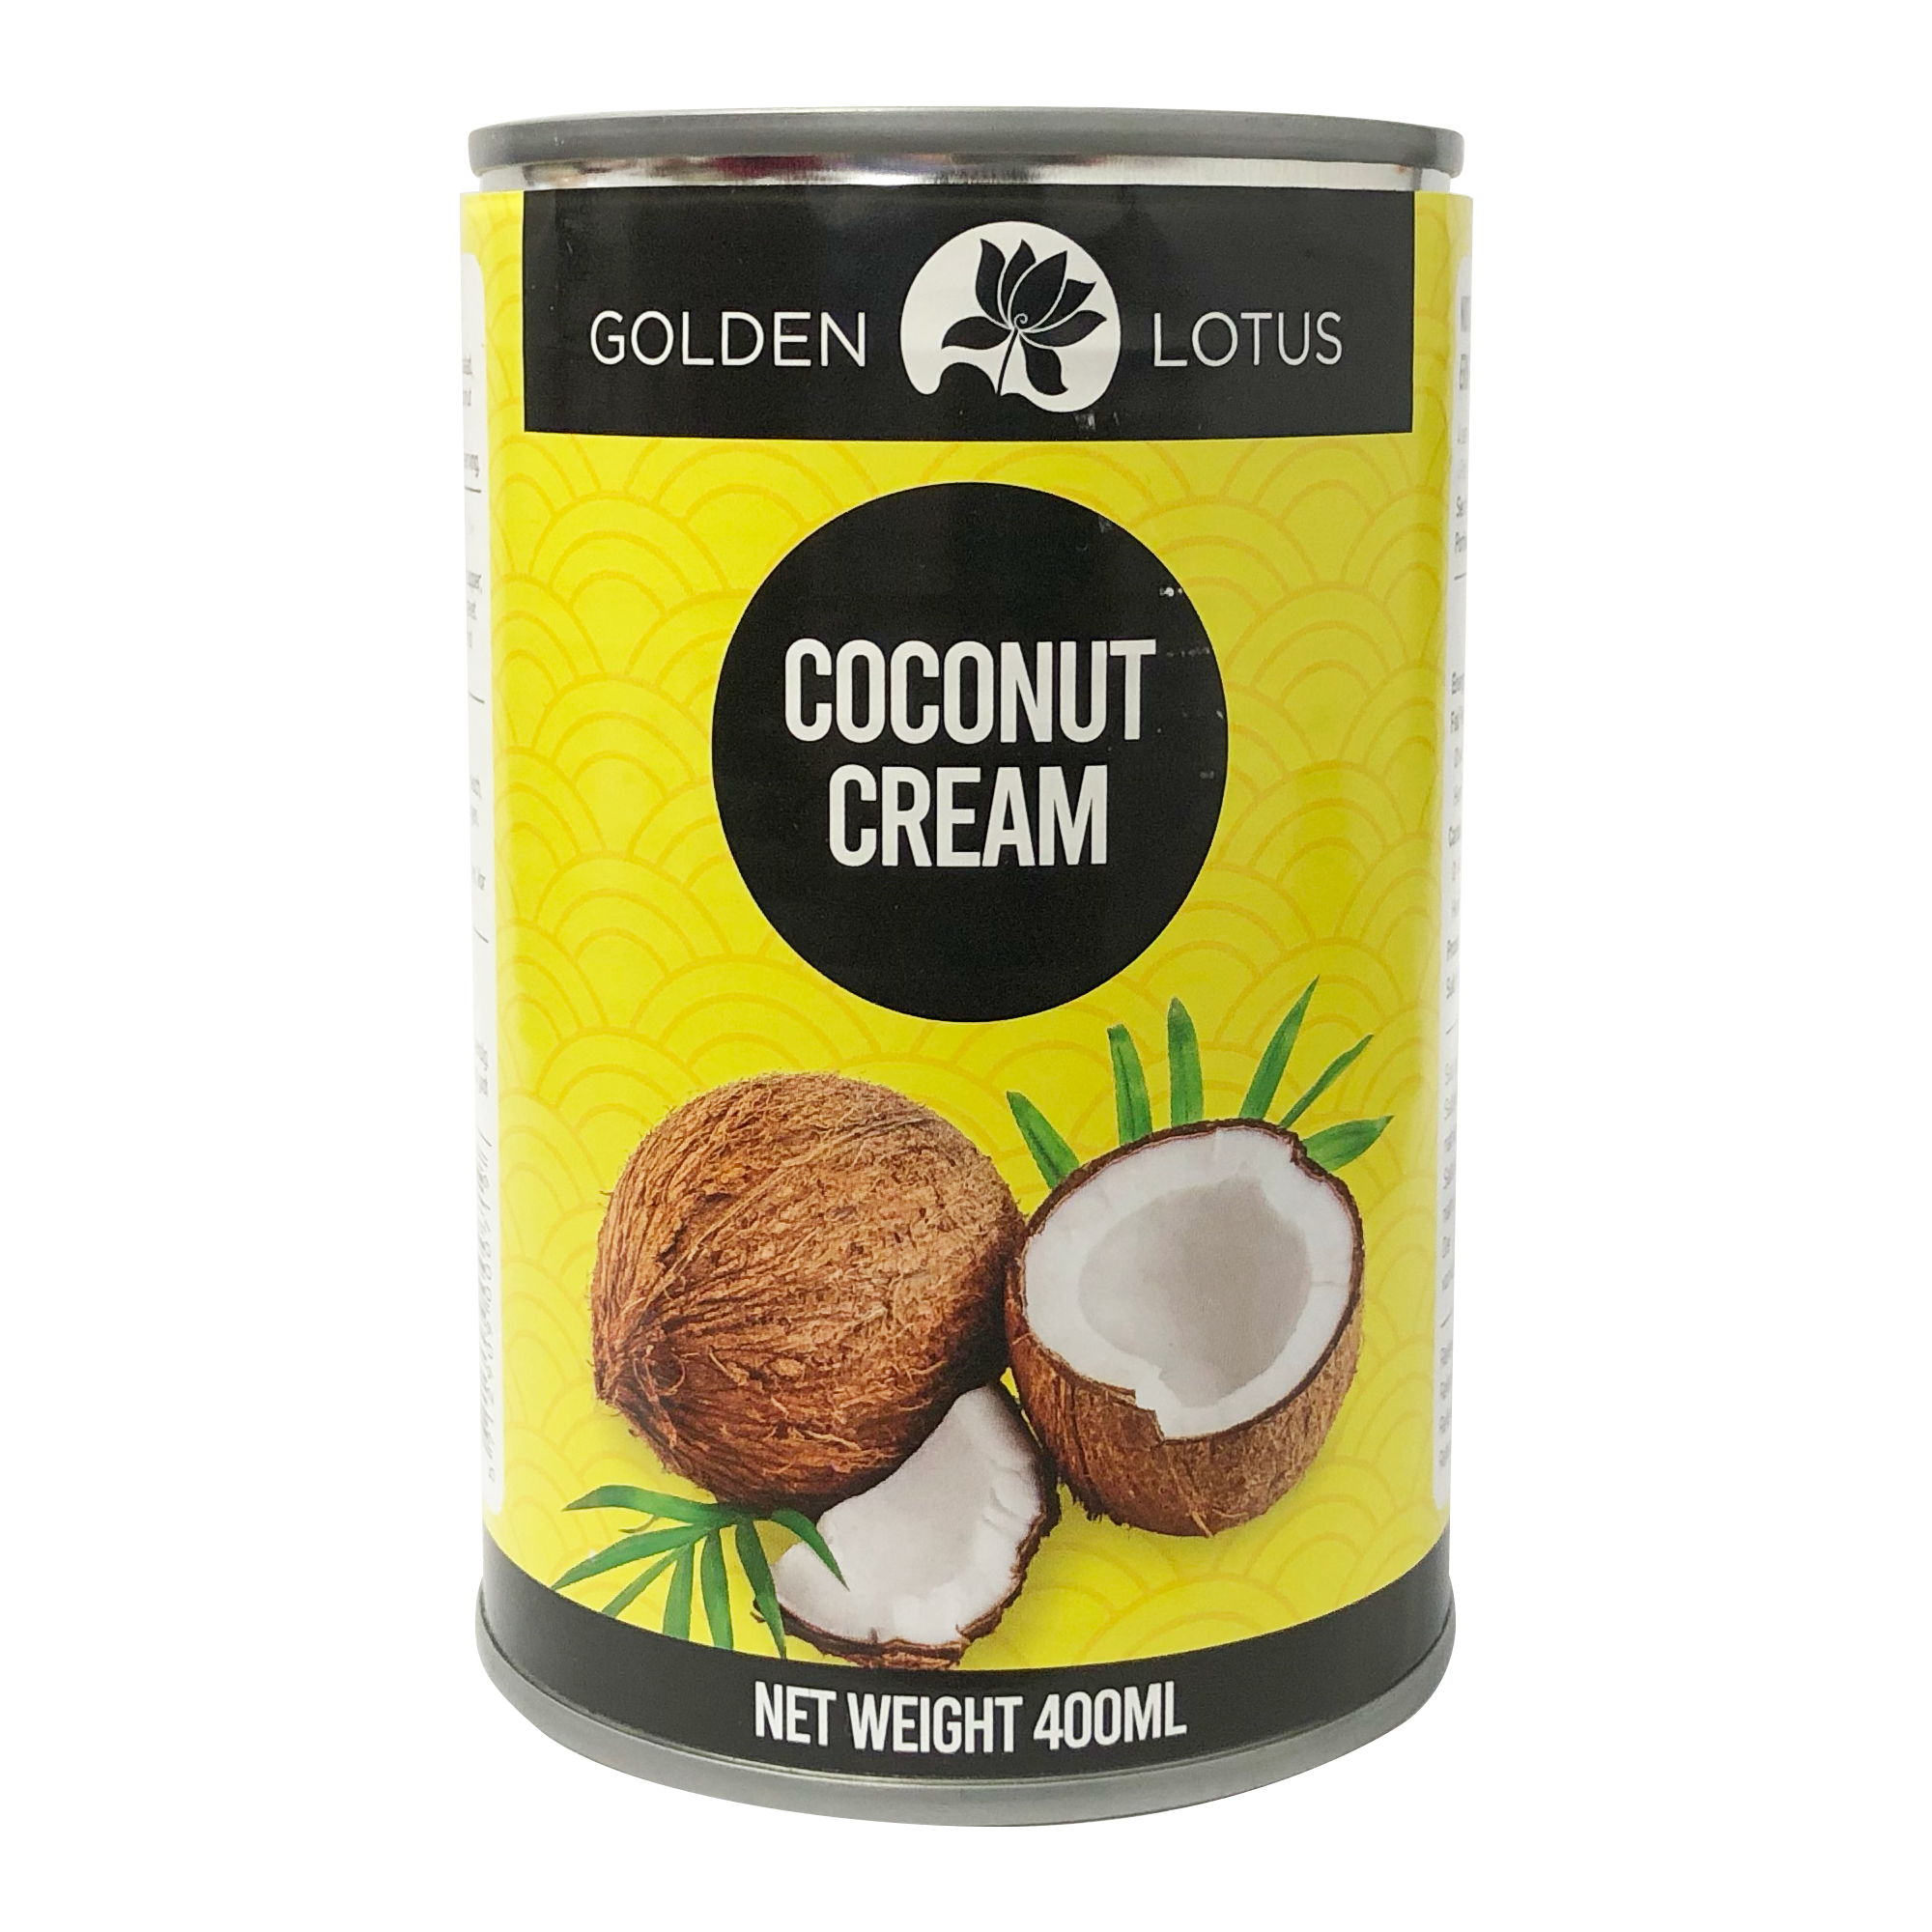 Golden Lotus Coconut Cream 400ml (20-22%)